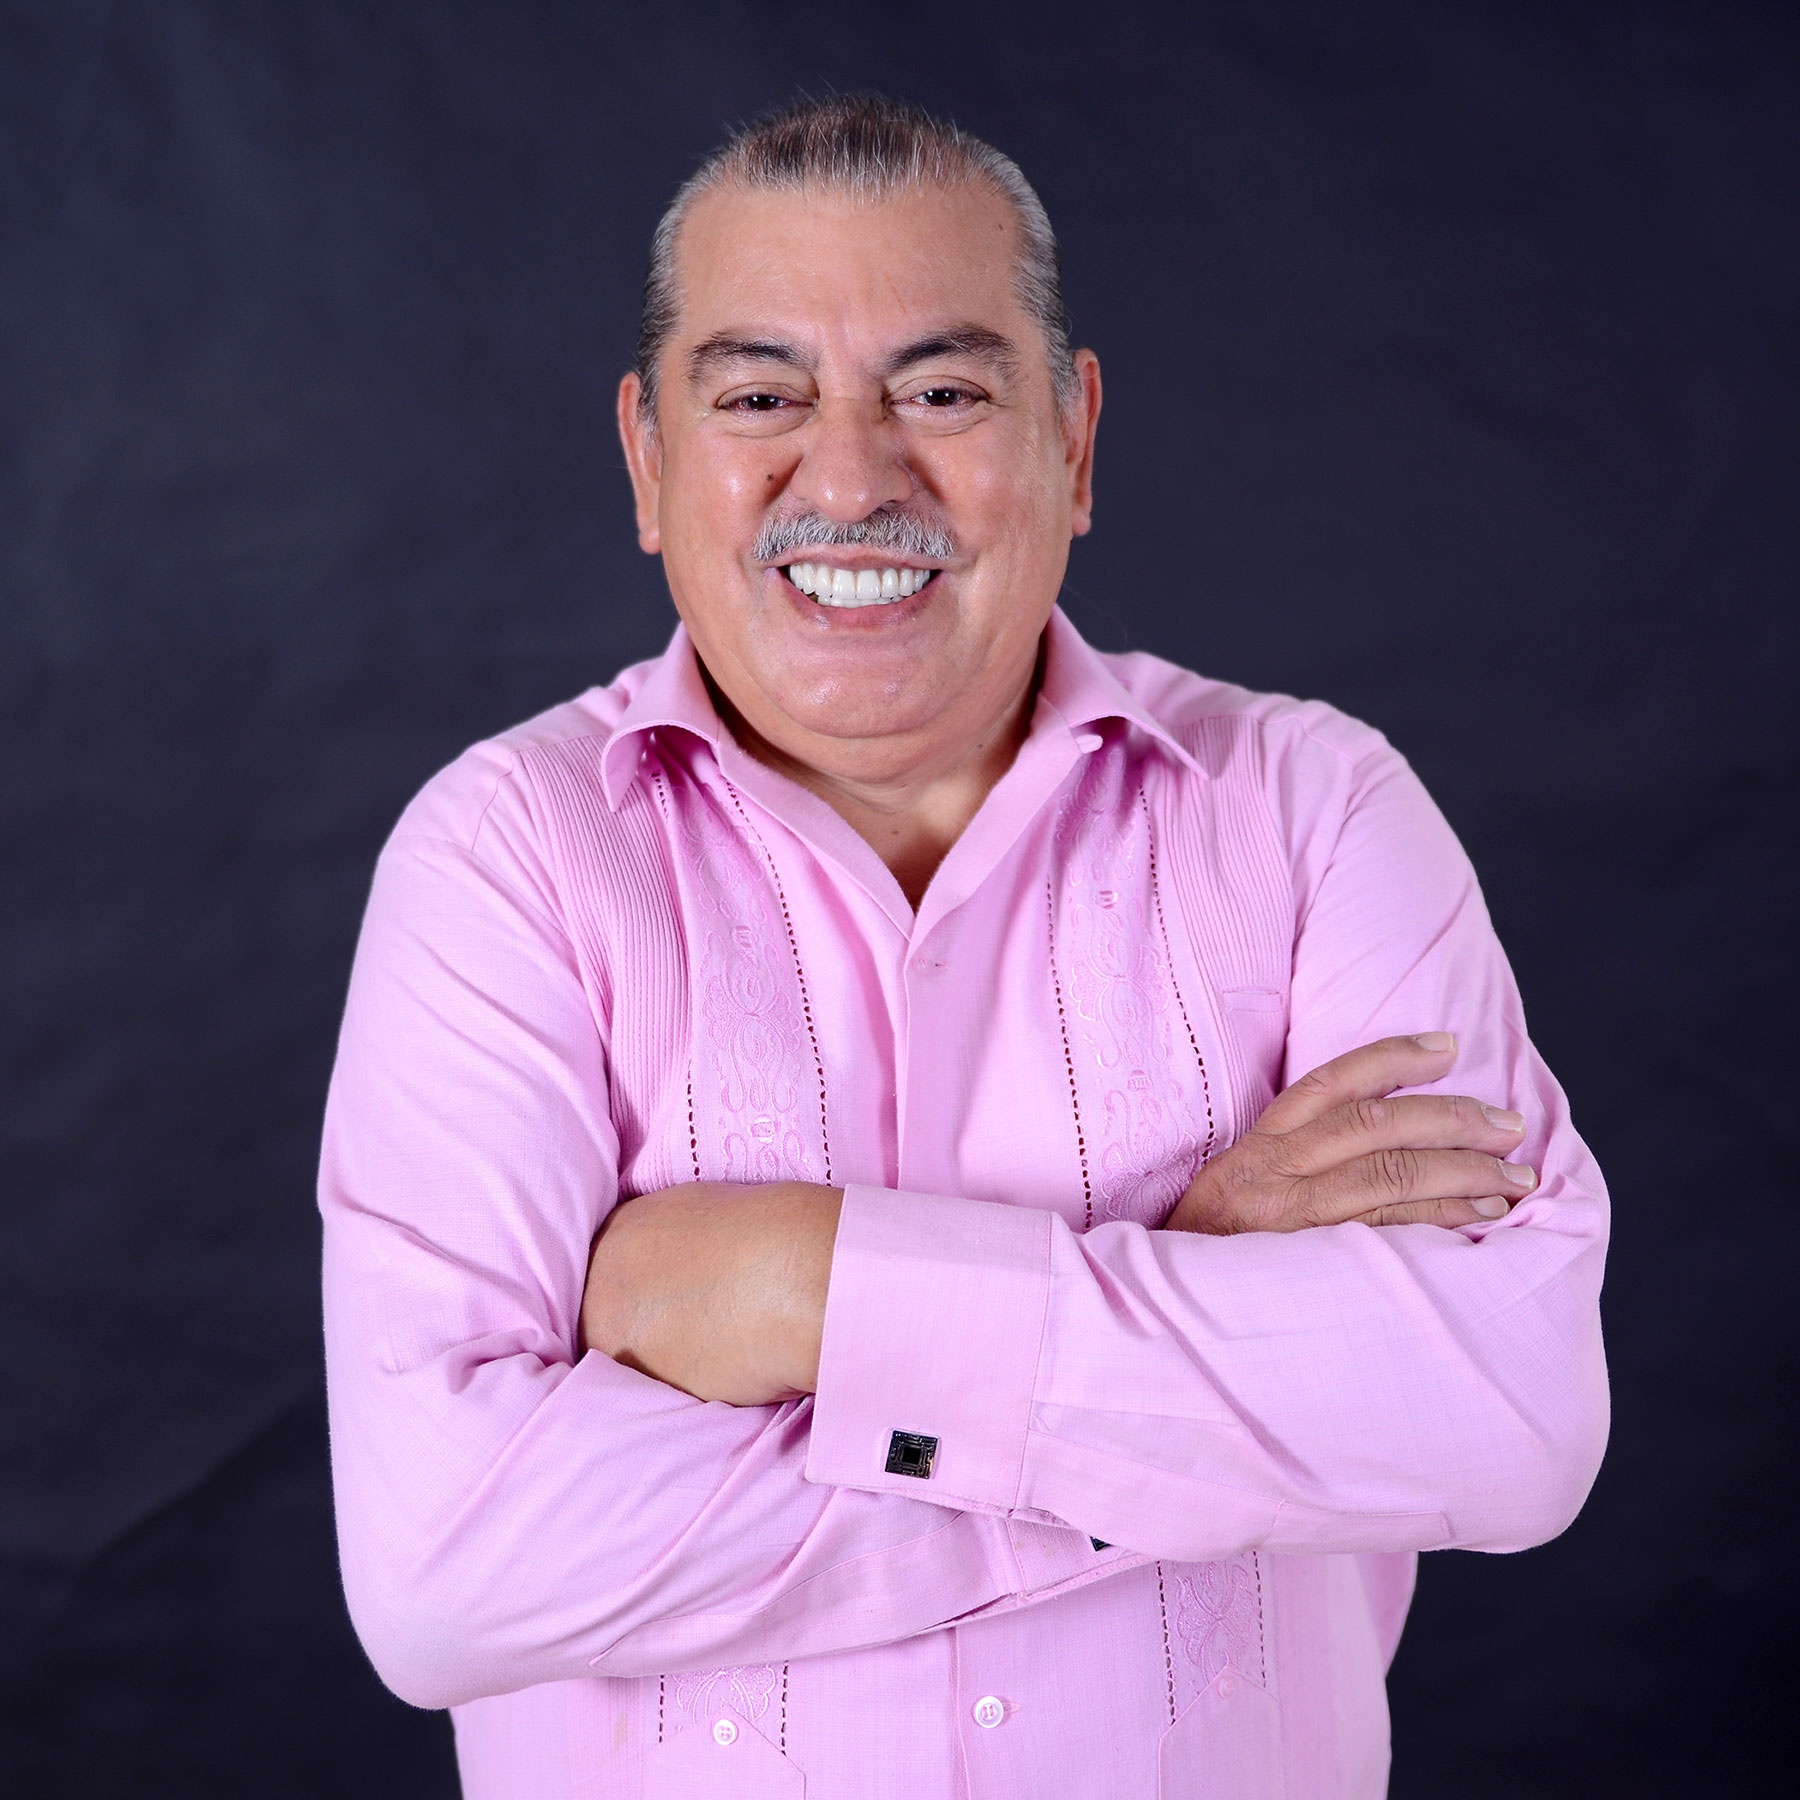 Armando Vazques-Ramos' profile picture